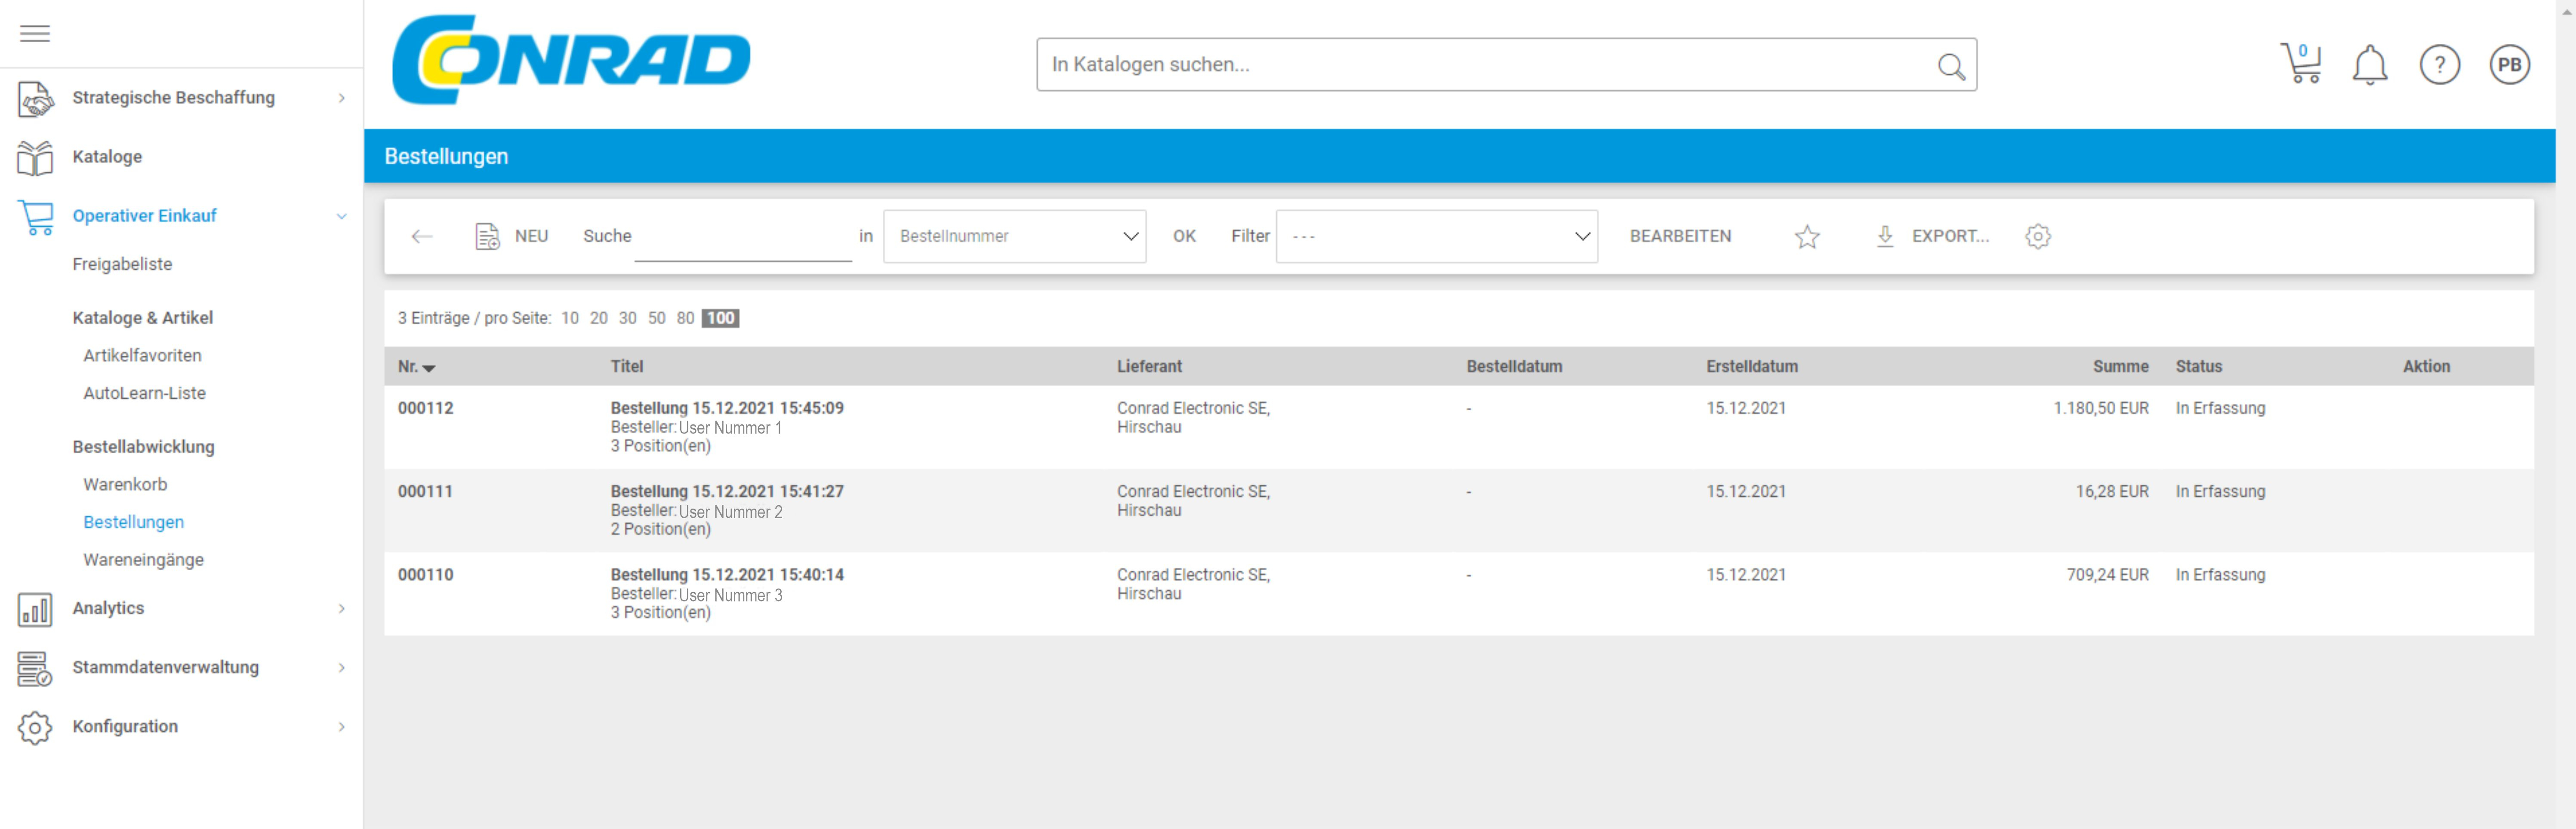 Capture d’écran de la liste d’acheteurs CSP